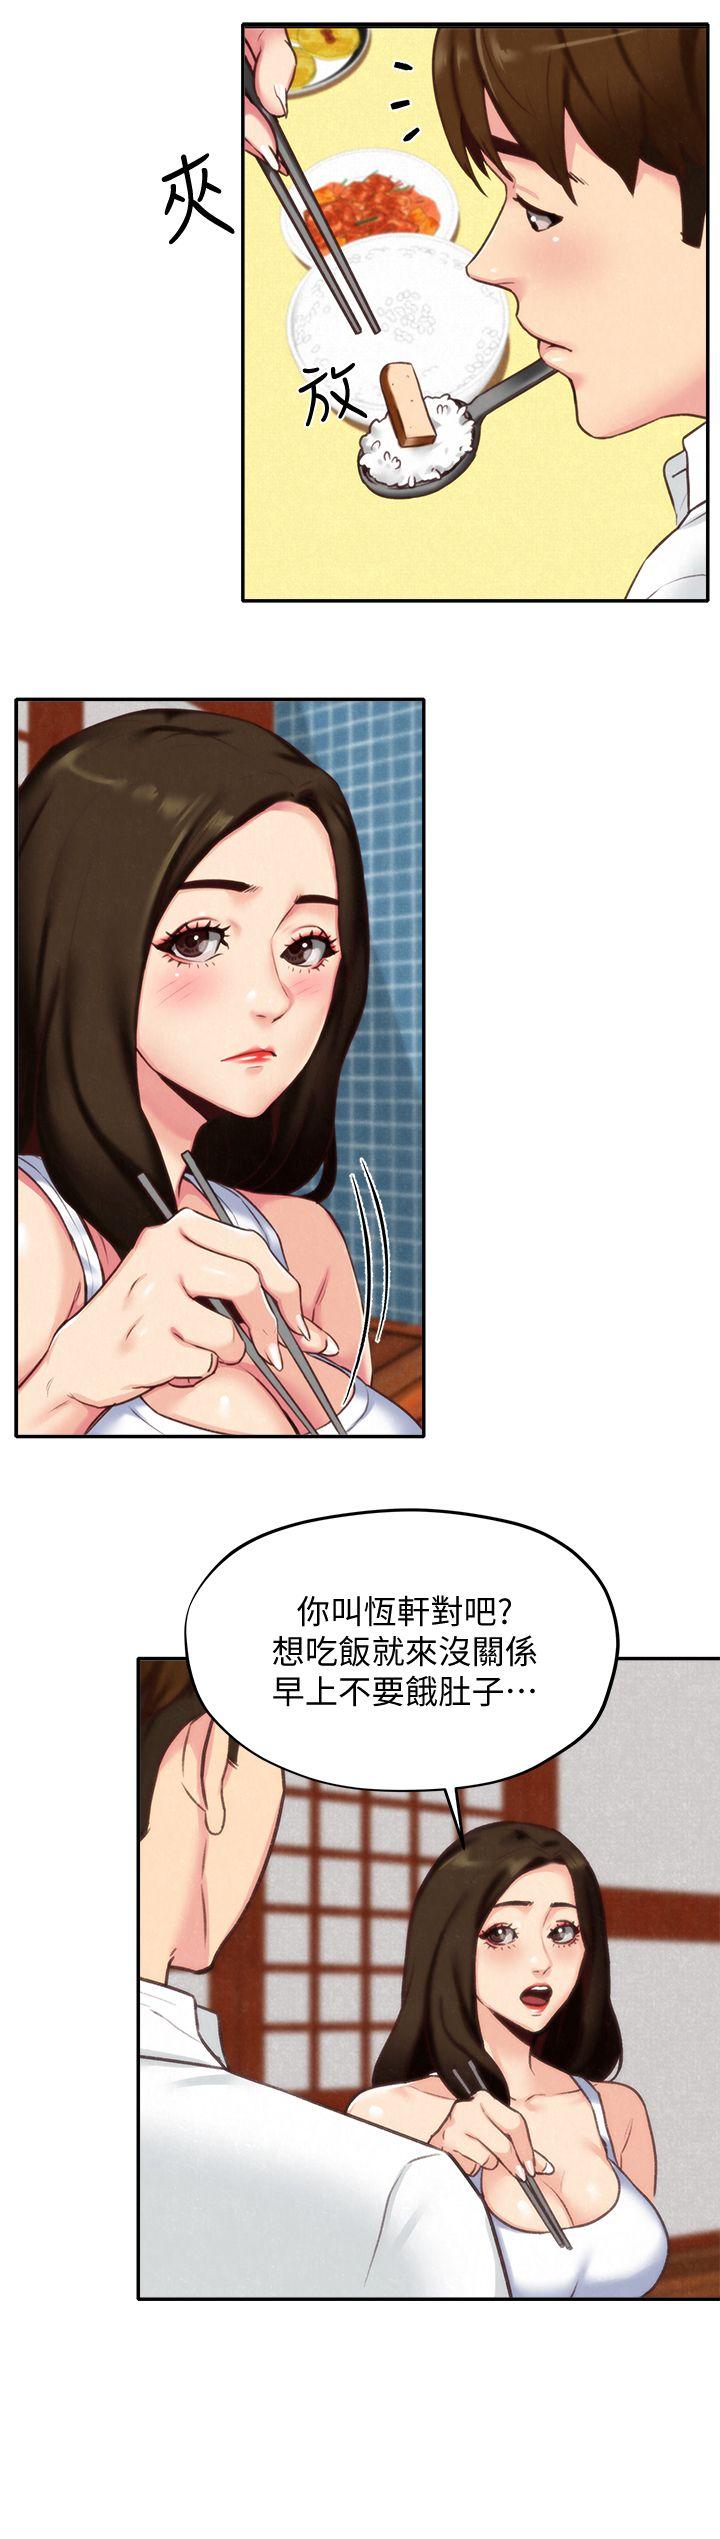 《朋友的姐姐》漫画 第4话-智妤姐有男友了?!